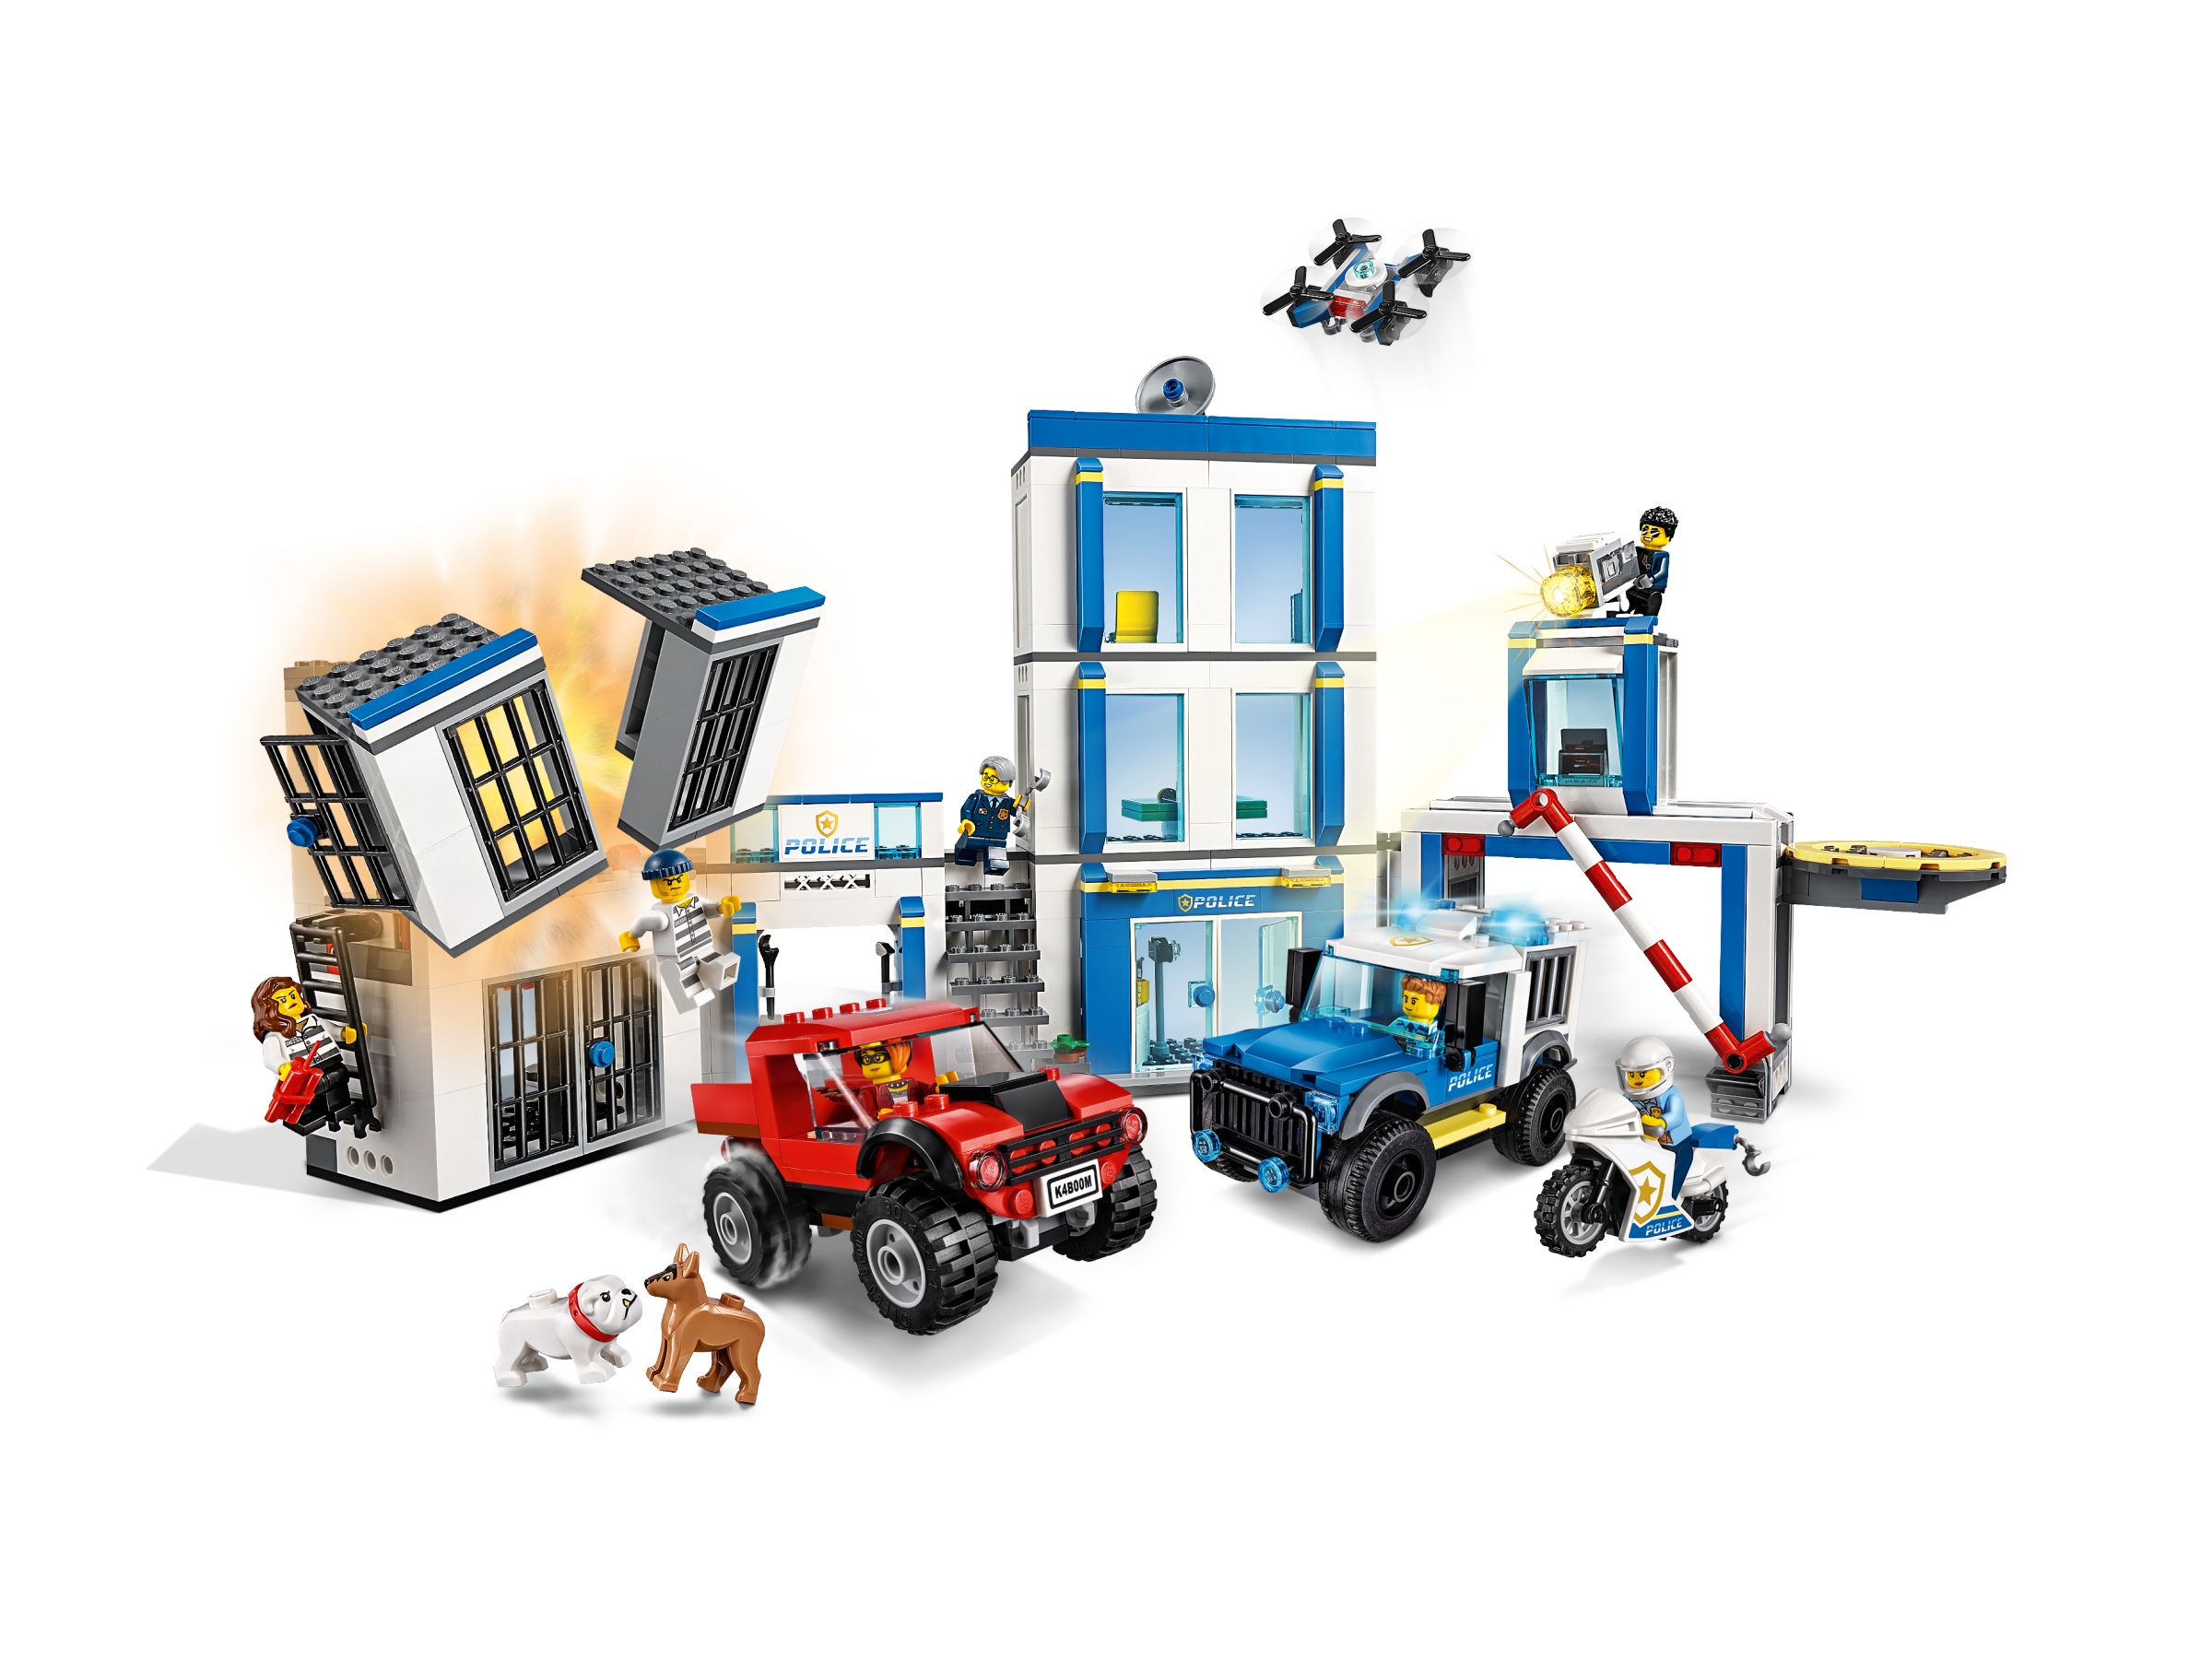 LEGO City 60246 Polizeistation LEGO_60246_alt2.jpg